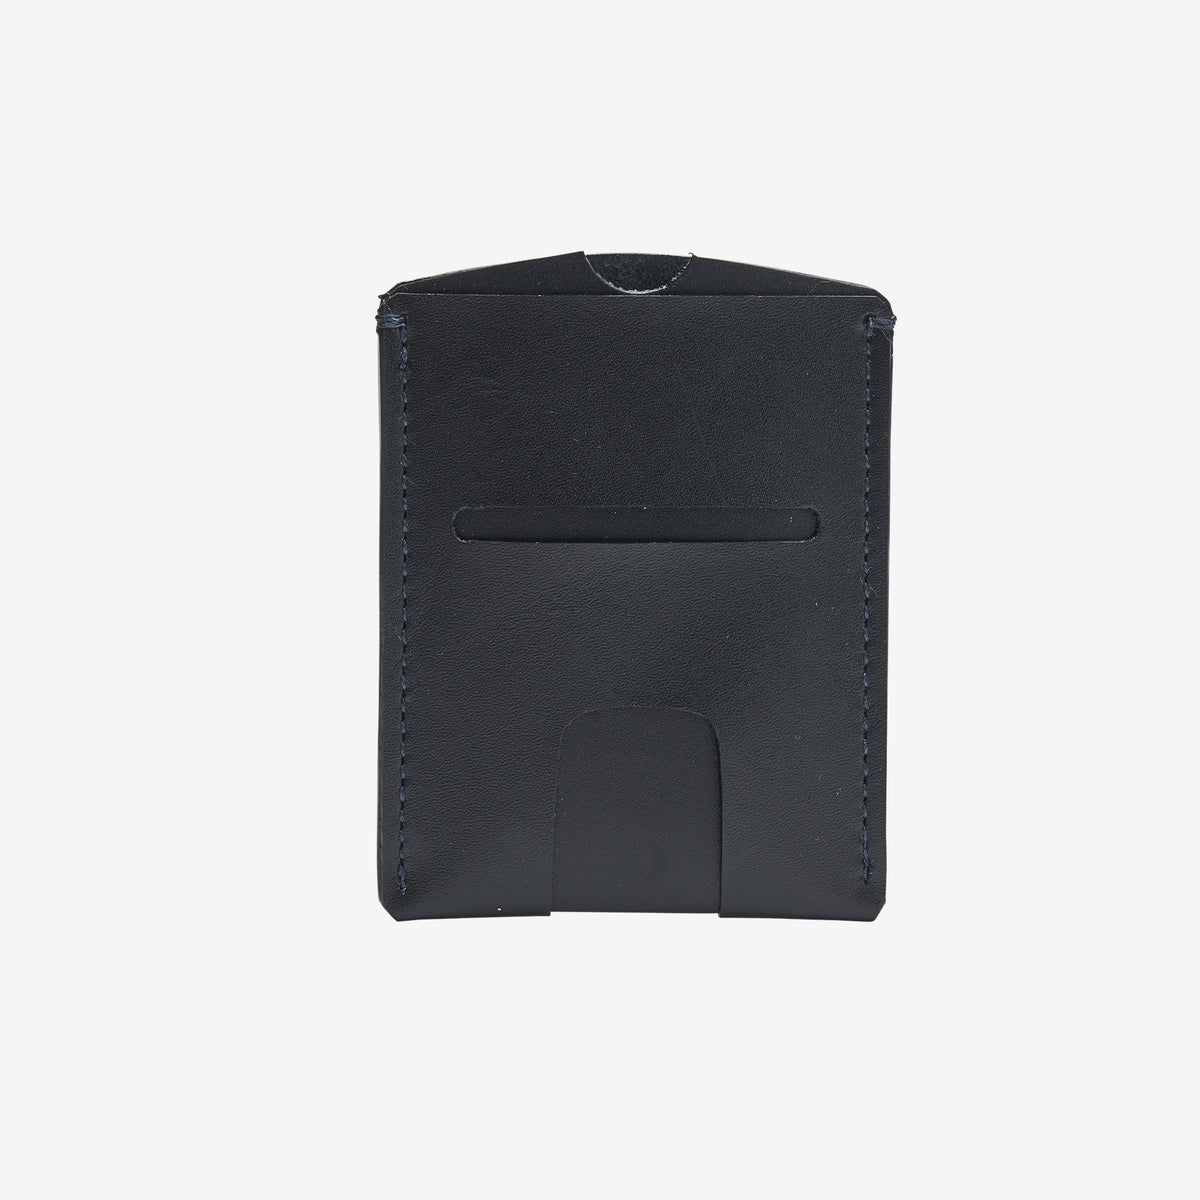 tusk-190-mens-leather-slim-slide-card-case-black-back